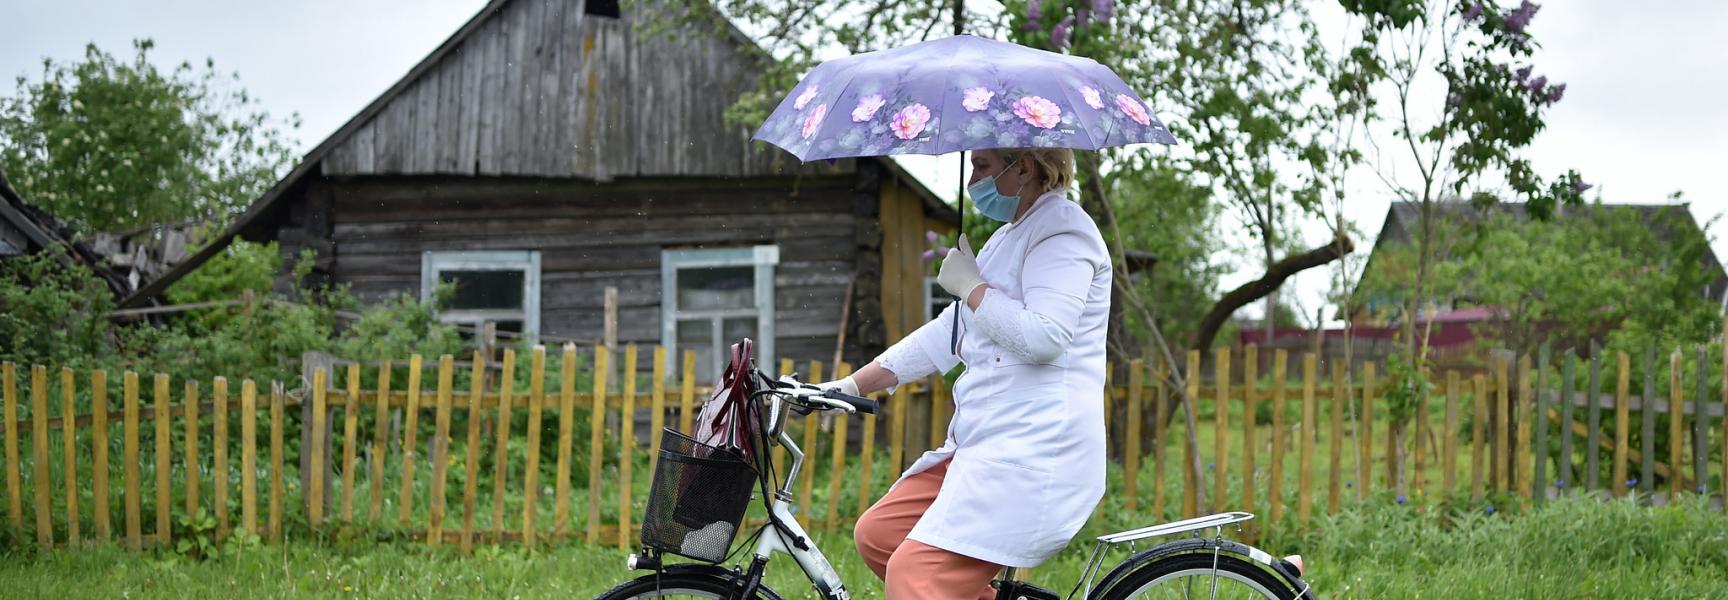 Médico del pueblo sobre una bicicleta en Belarus